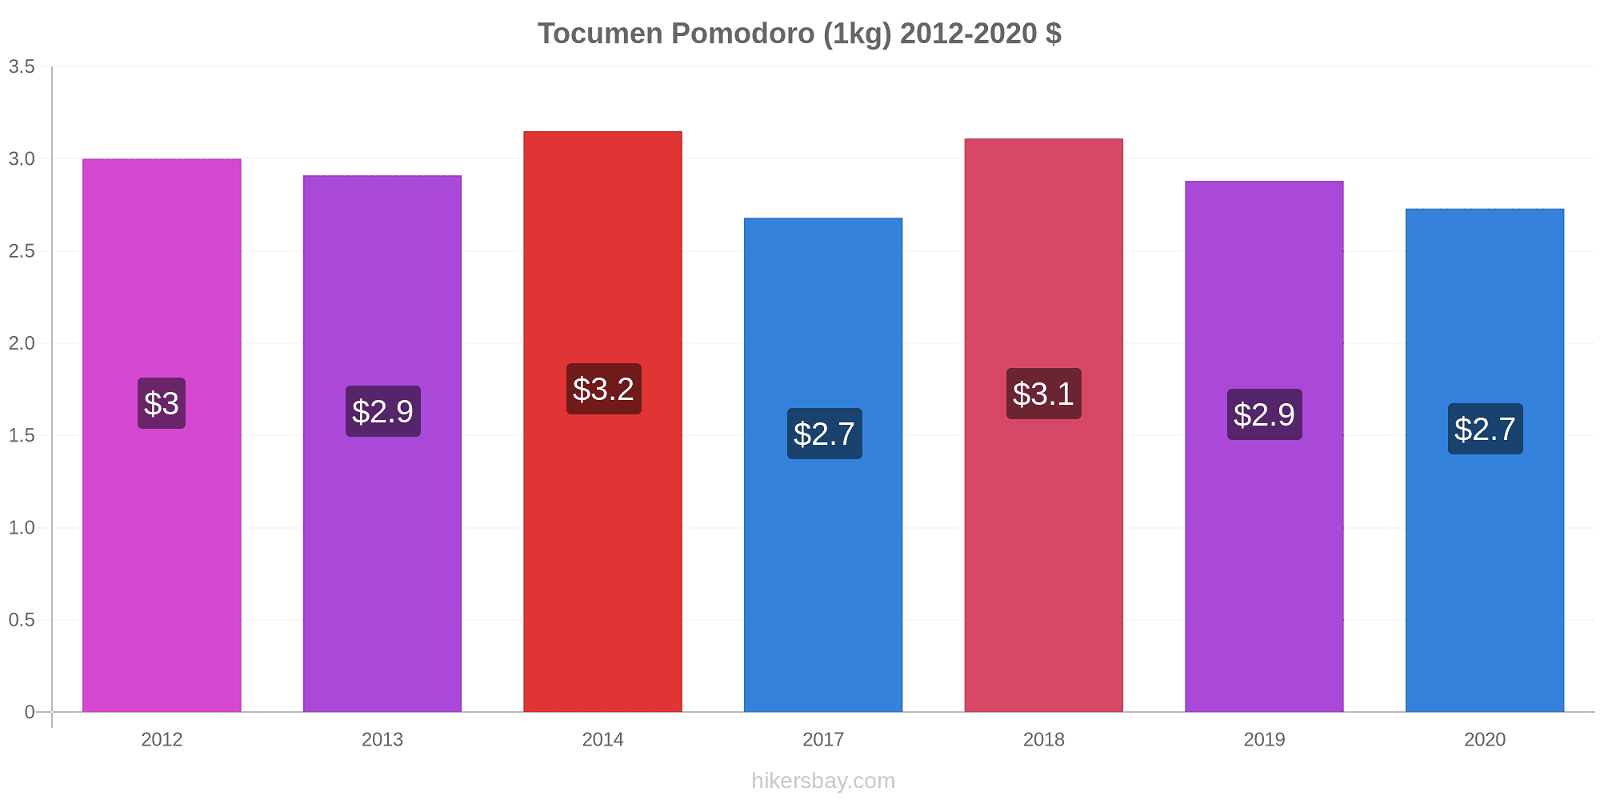 Tocumen variazioni di prezzo Pomodoro (1kg) hikersbay.com